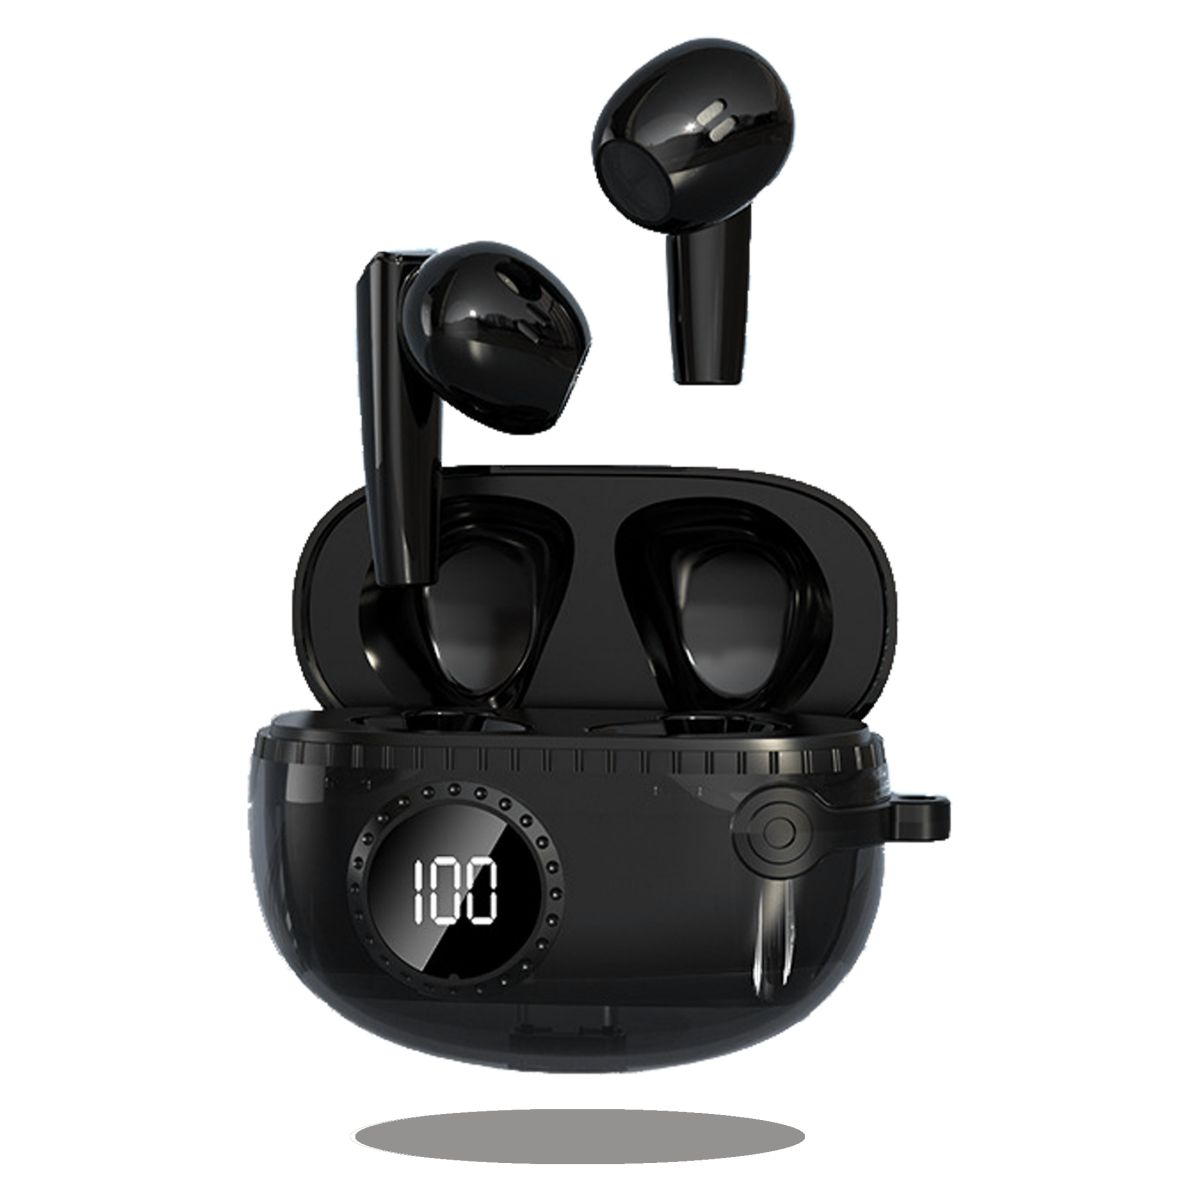 DIIDA schwarz Kopfhörer Funk-Kopfhörer, In-ear Kopfhörer,In-Ear-Bluetooth-Kopfhörer Geräuschunterdrückung,Smart Bluetooth mit